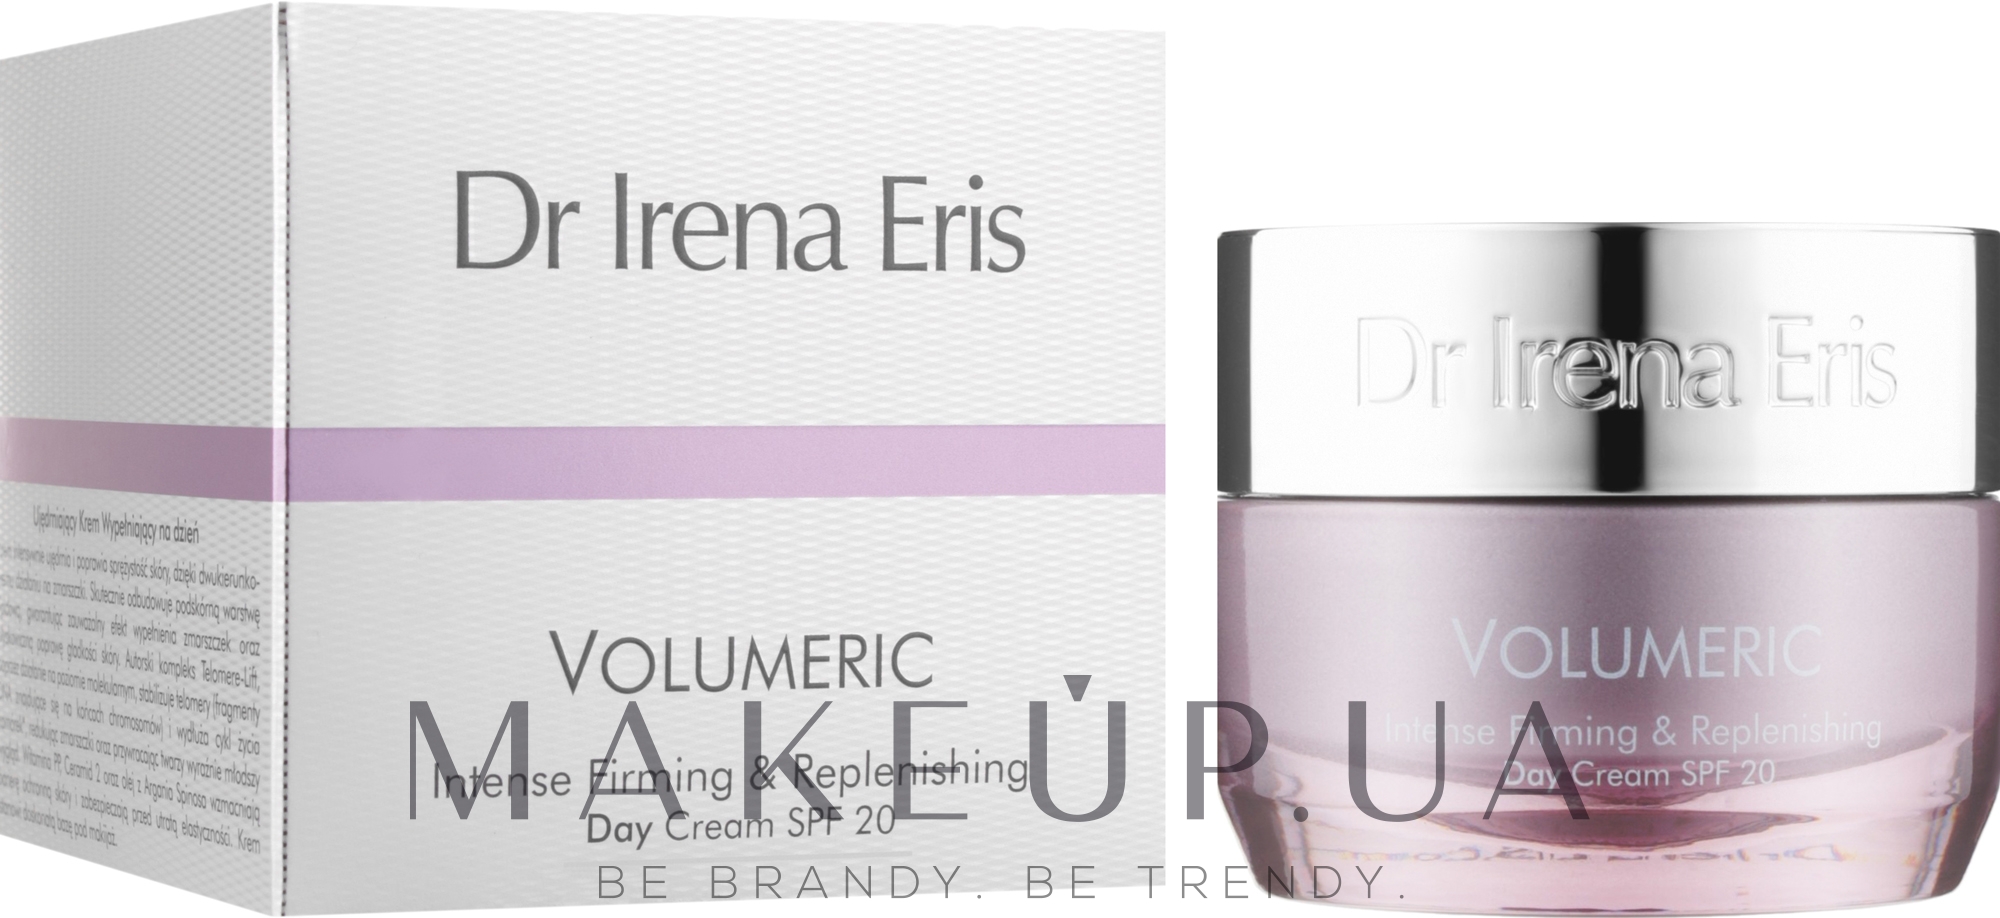 Интенсивный восстанавливающий дневной крем - Dr Irena Eris Volumeric Intense Firming & Replenishing Day Cream SPF 20 — фото 50ml